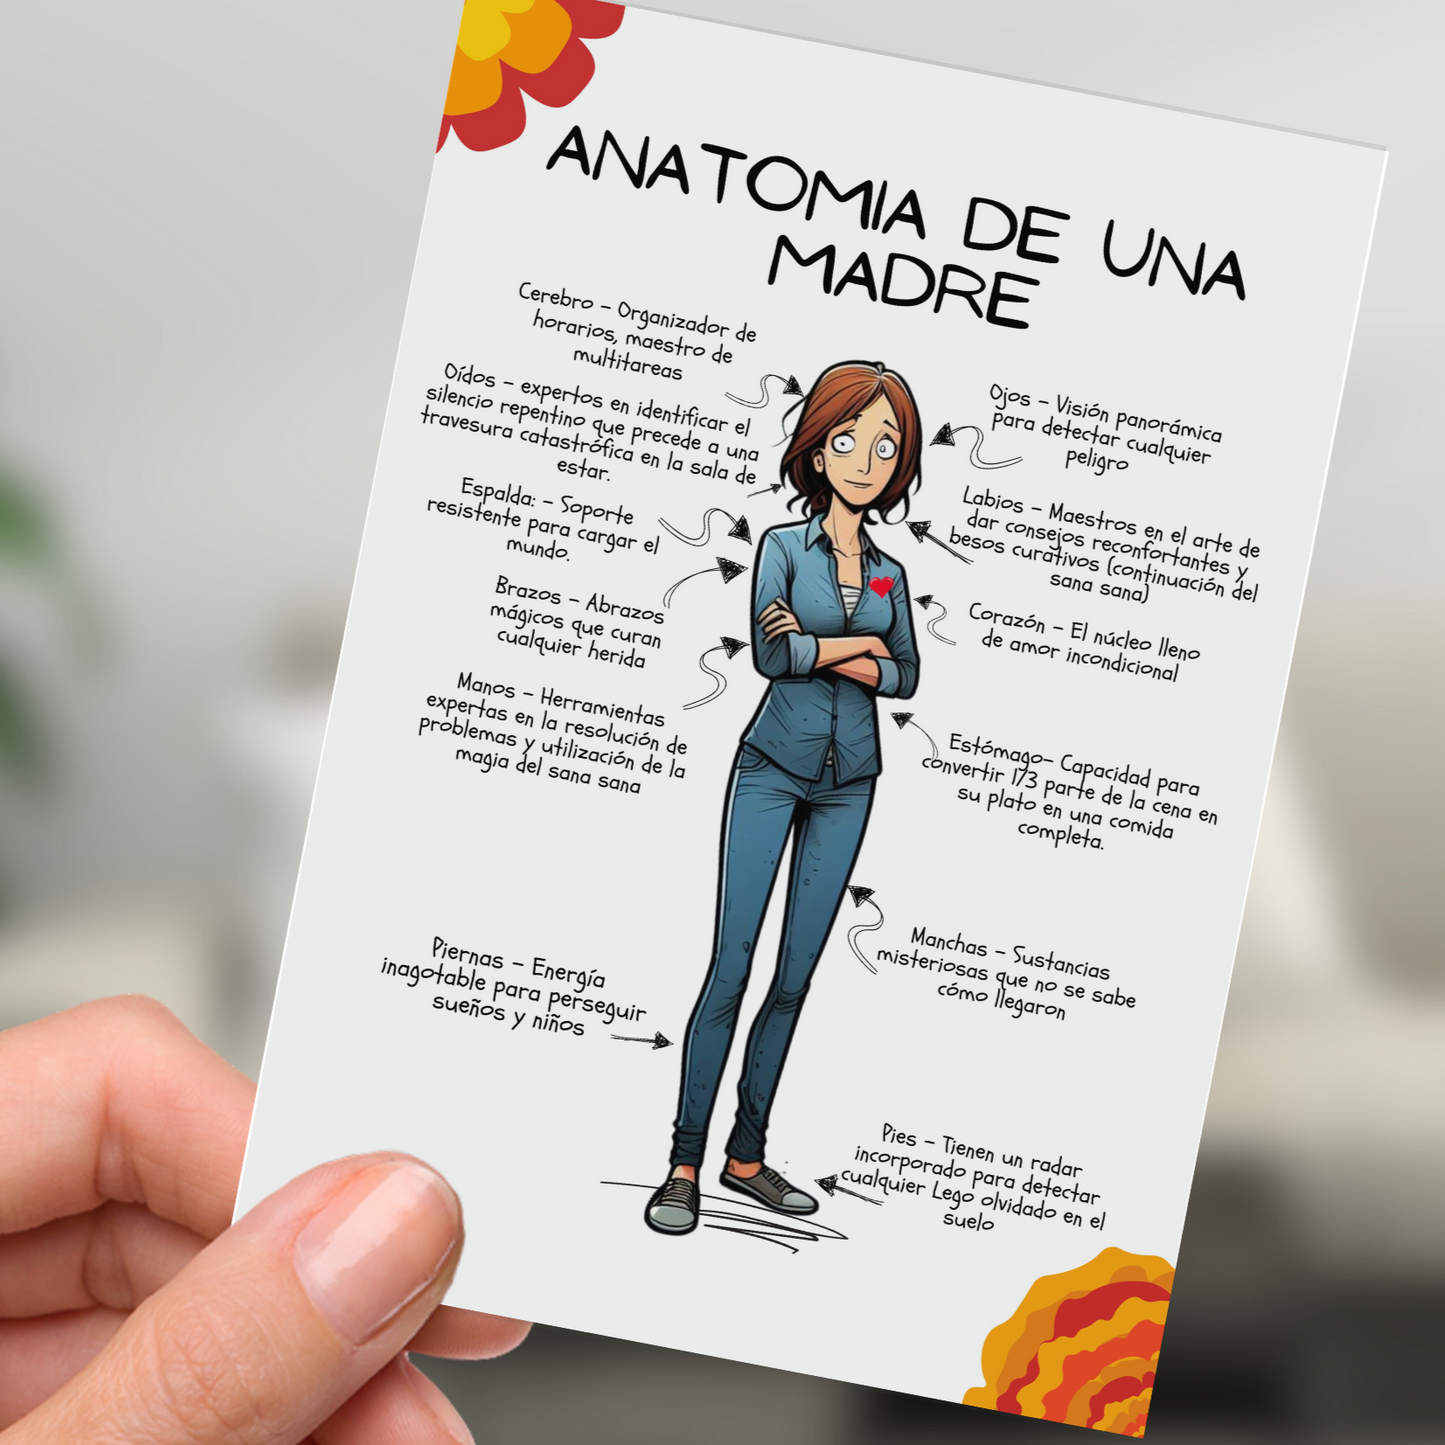 Anatomia de una Madre - Arte digital y tarjeta.